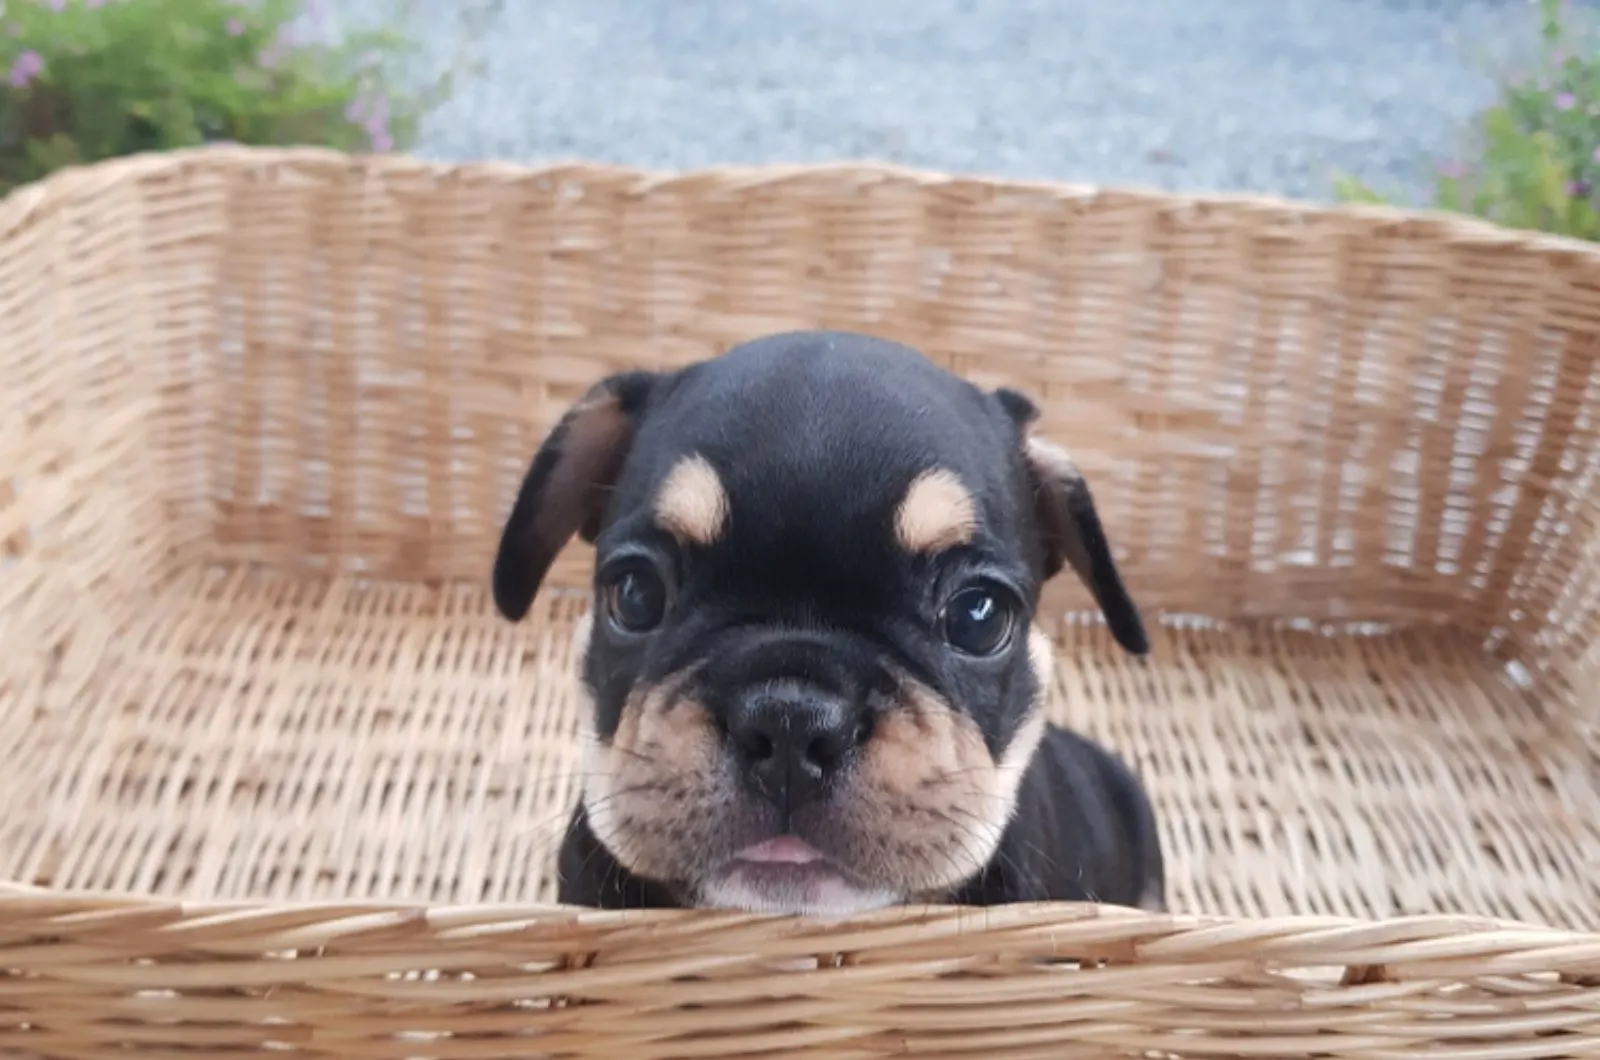 cute french bulldog puppy in a basket